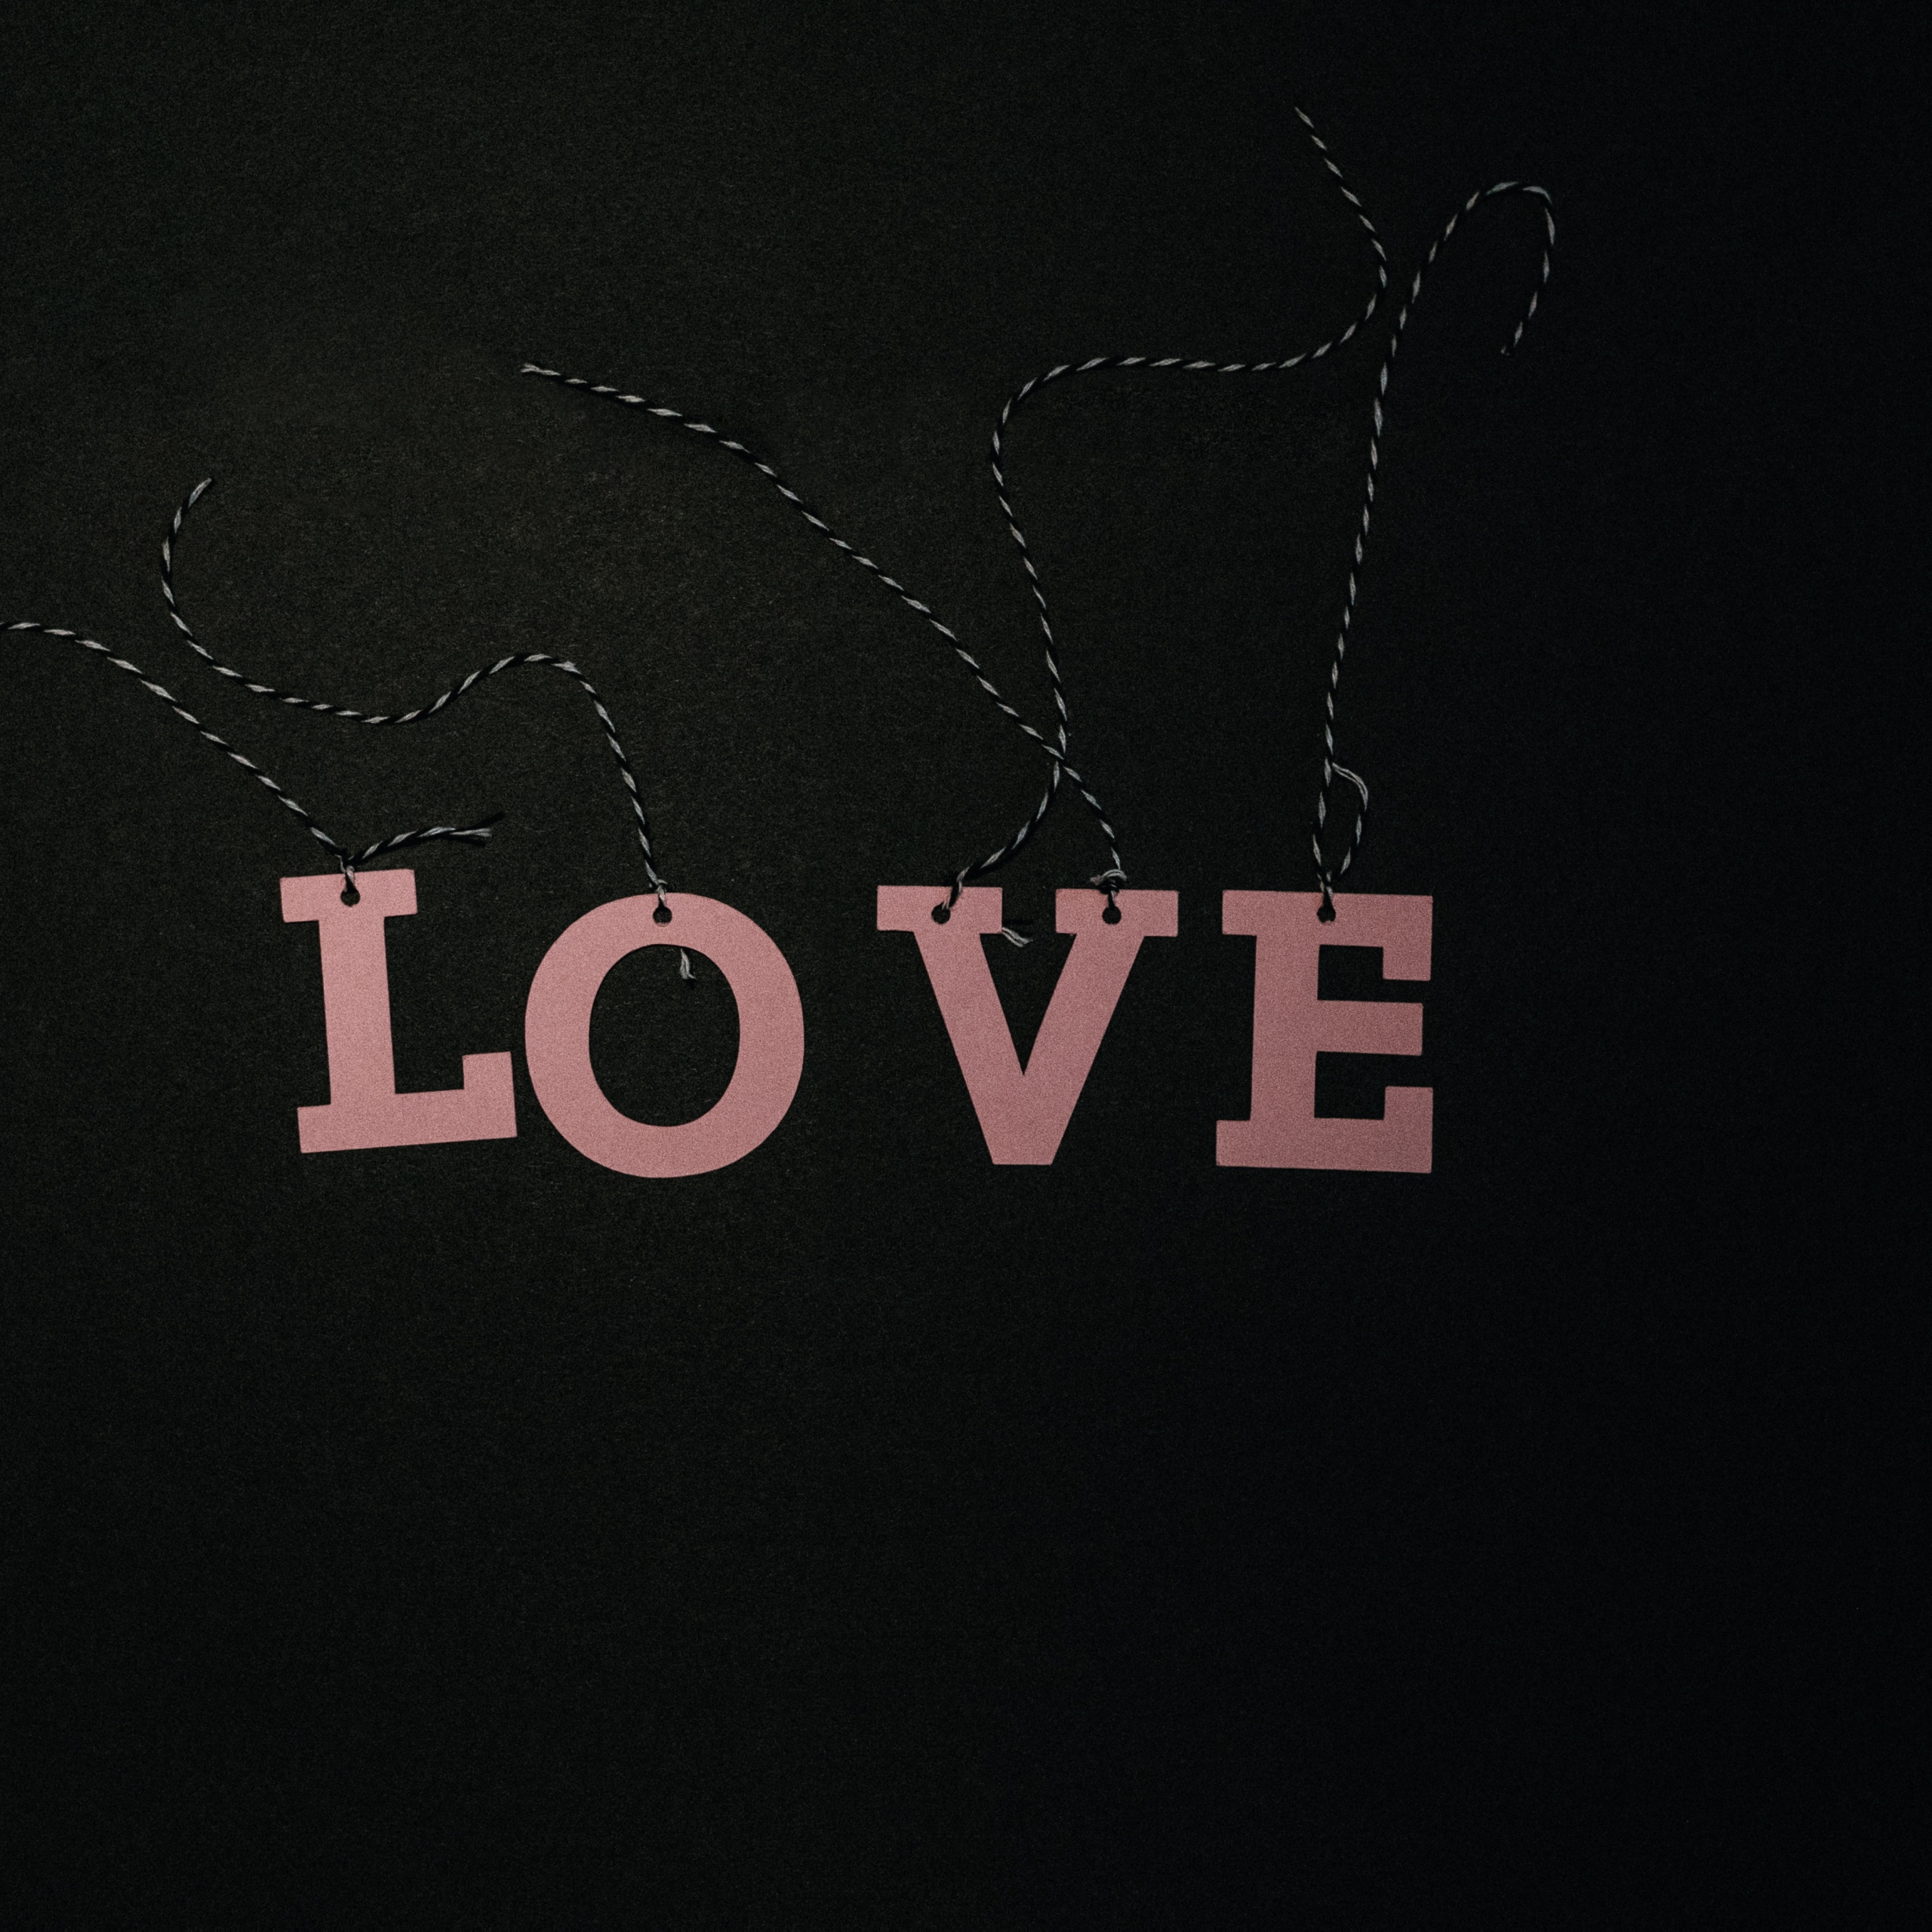 Love text Wallpaper 4K, Pink text, Dark background